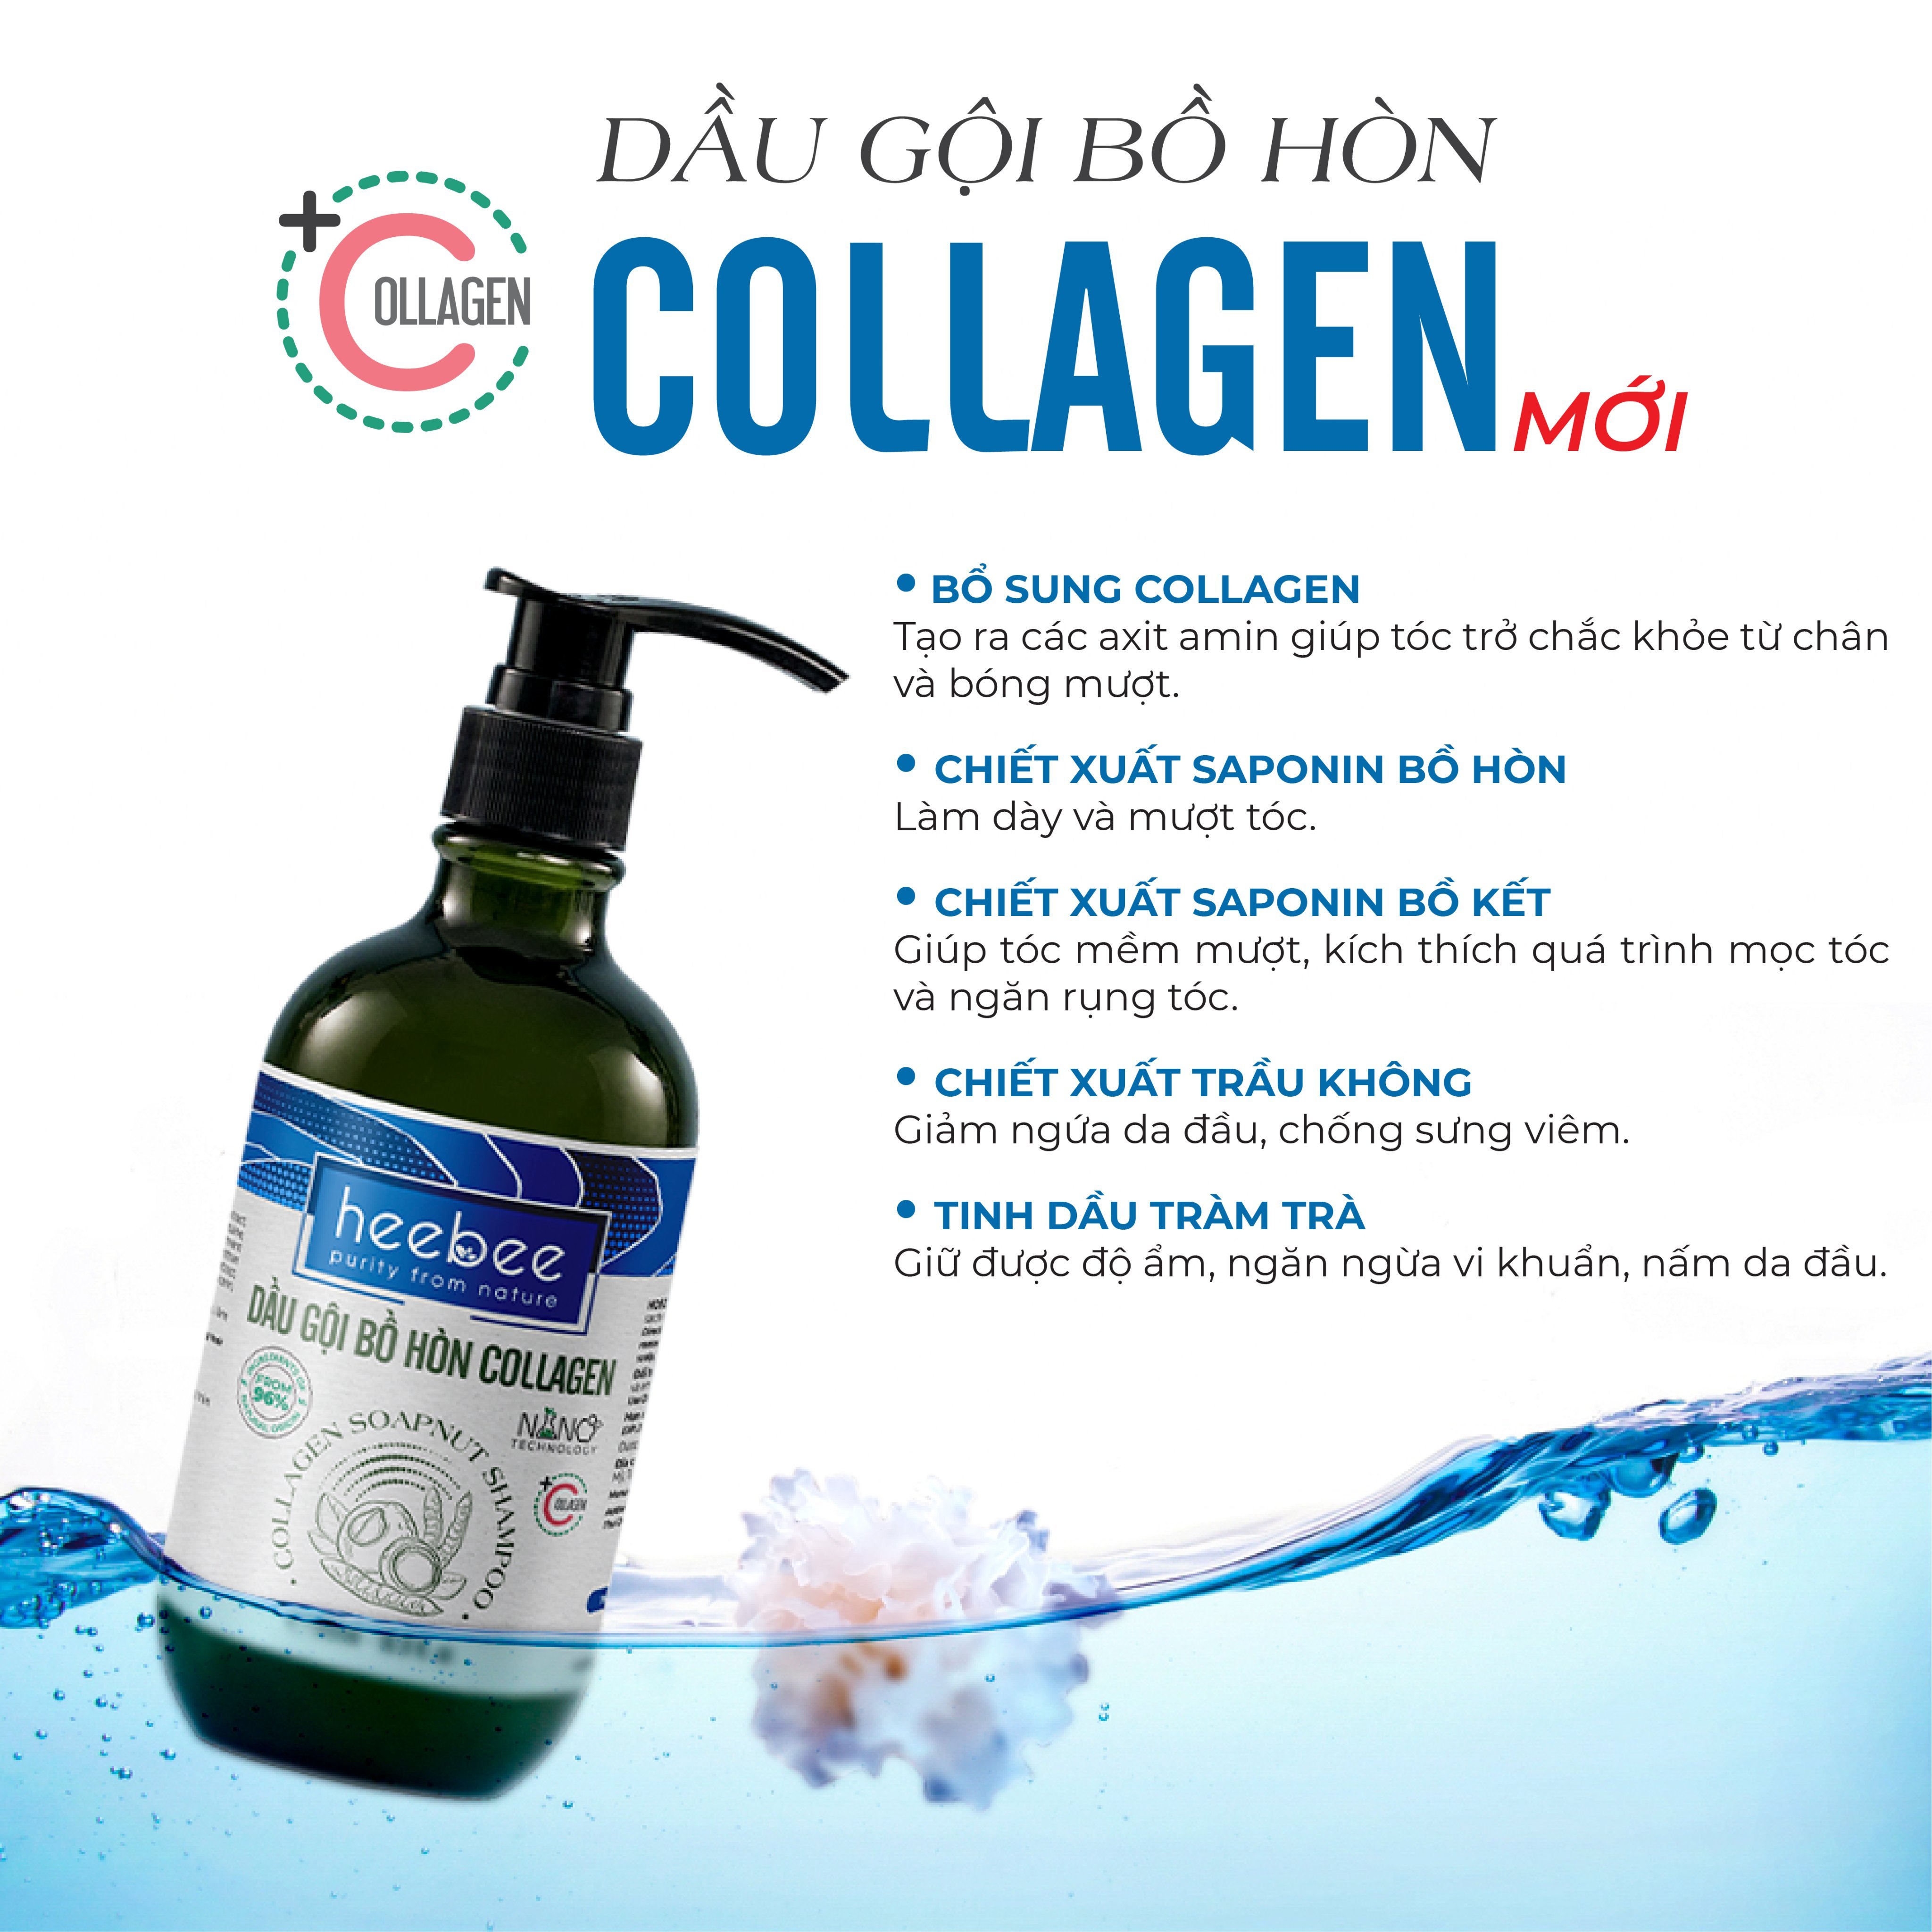 Dầu gội Bồ Hòn Collagen phục hồi tóc hư tổn, ngăn gàu, giảm ngứa - Soapnut Shampoo - Hương Thảo Nguyên 500ml